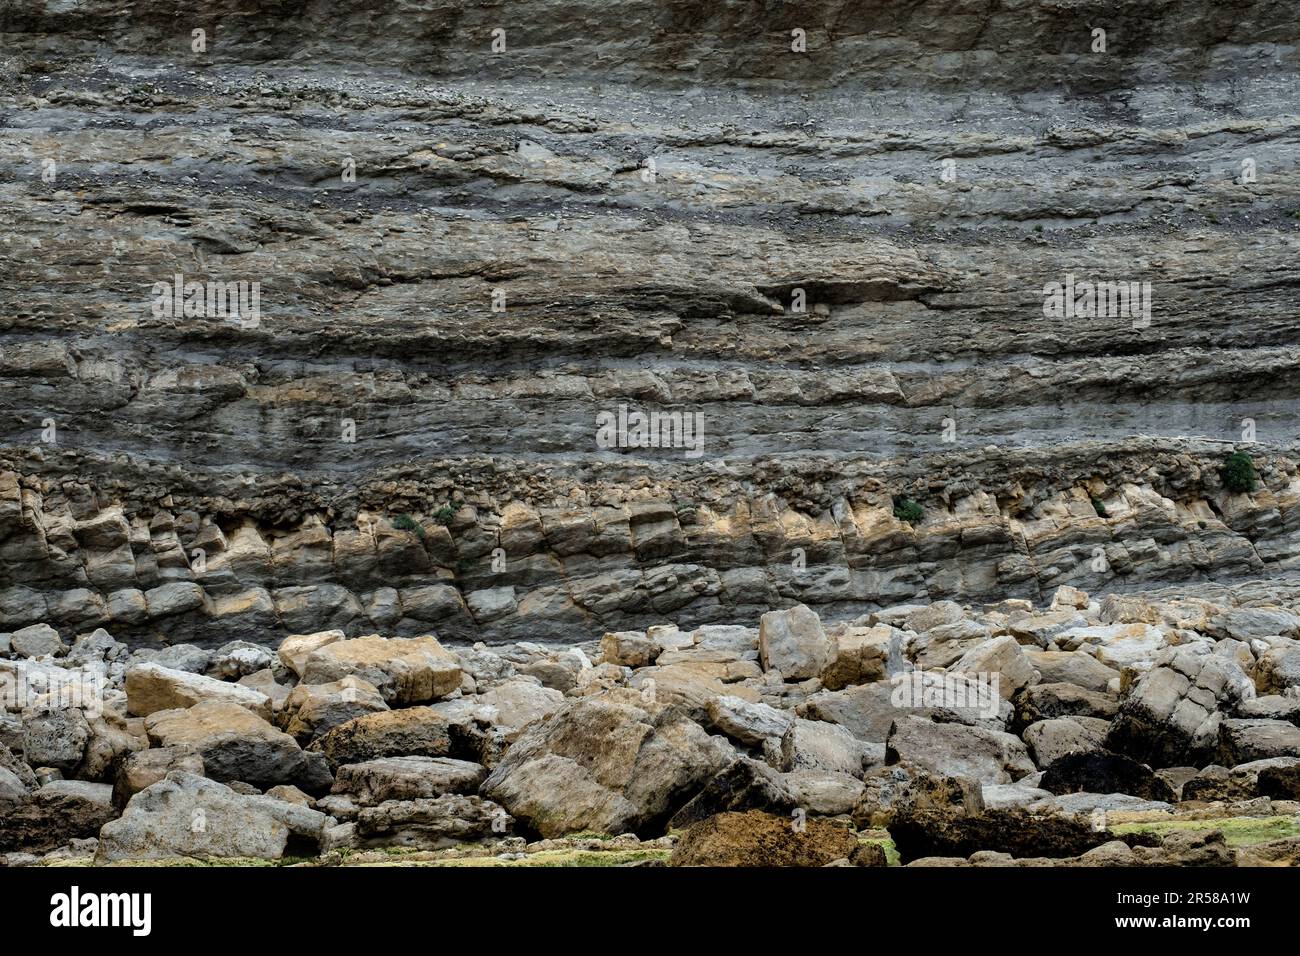 Stratification rythmique des roches sédimentaires déposées en couches horizontales. Broken Coast of Liencres, Cantabrie, Espagne. Banque D'Images